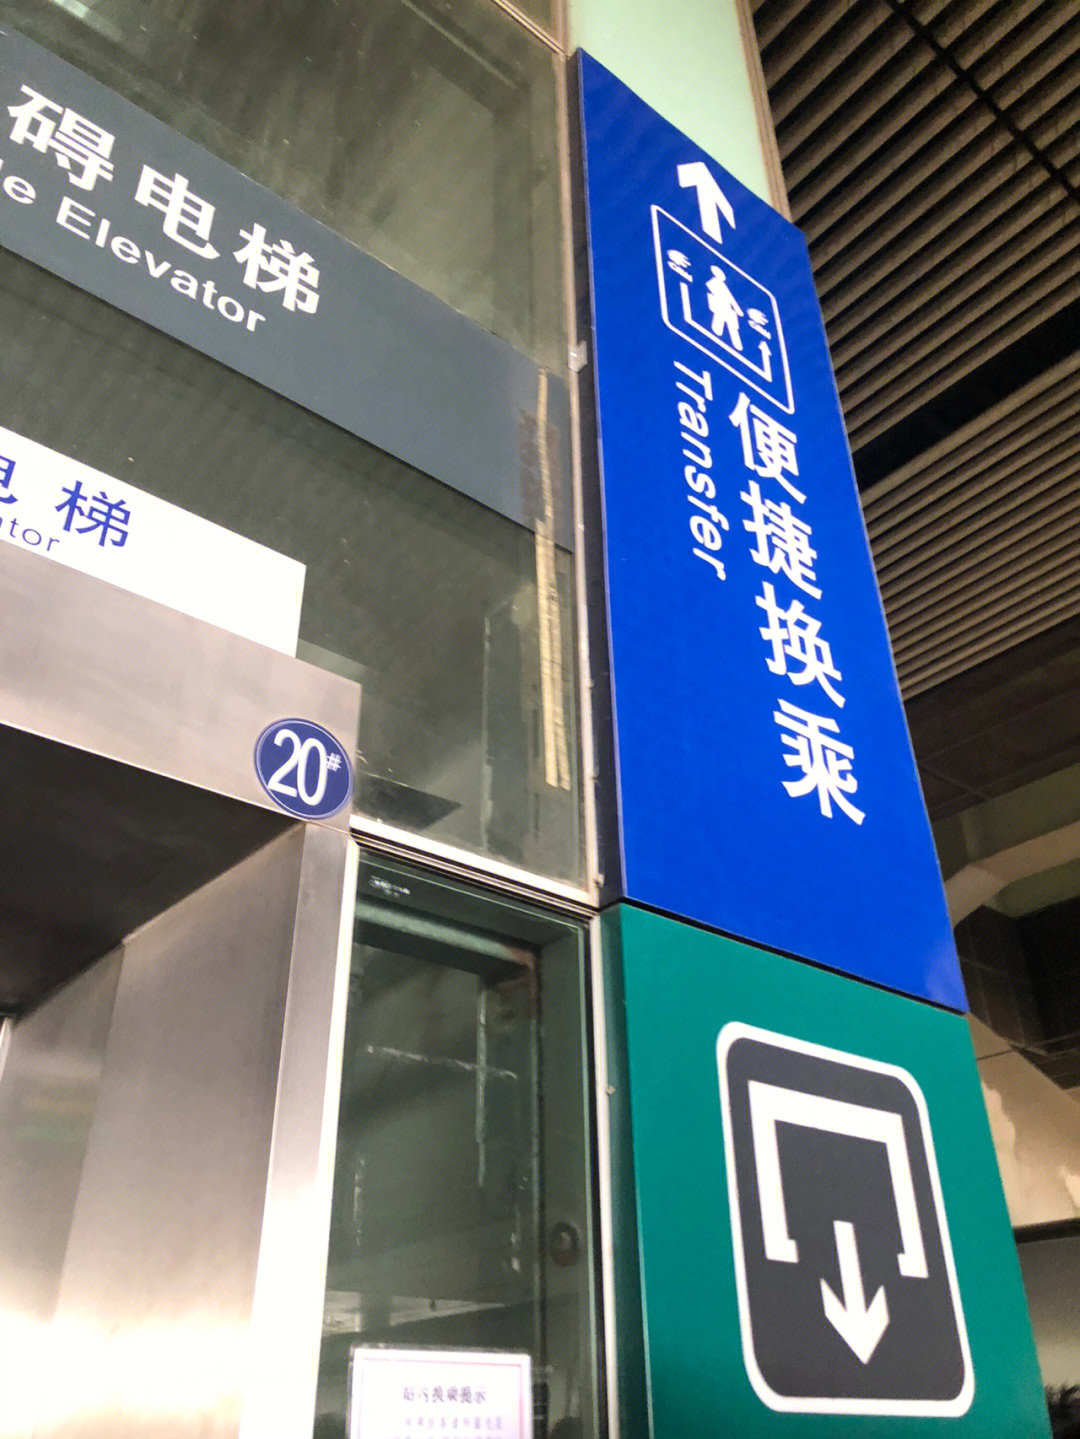 武昌火车站内换乘图片